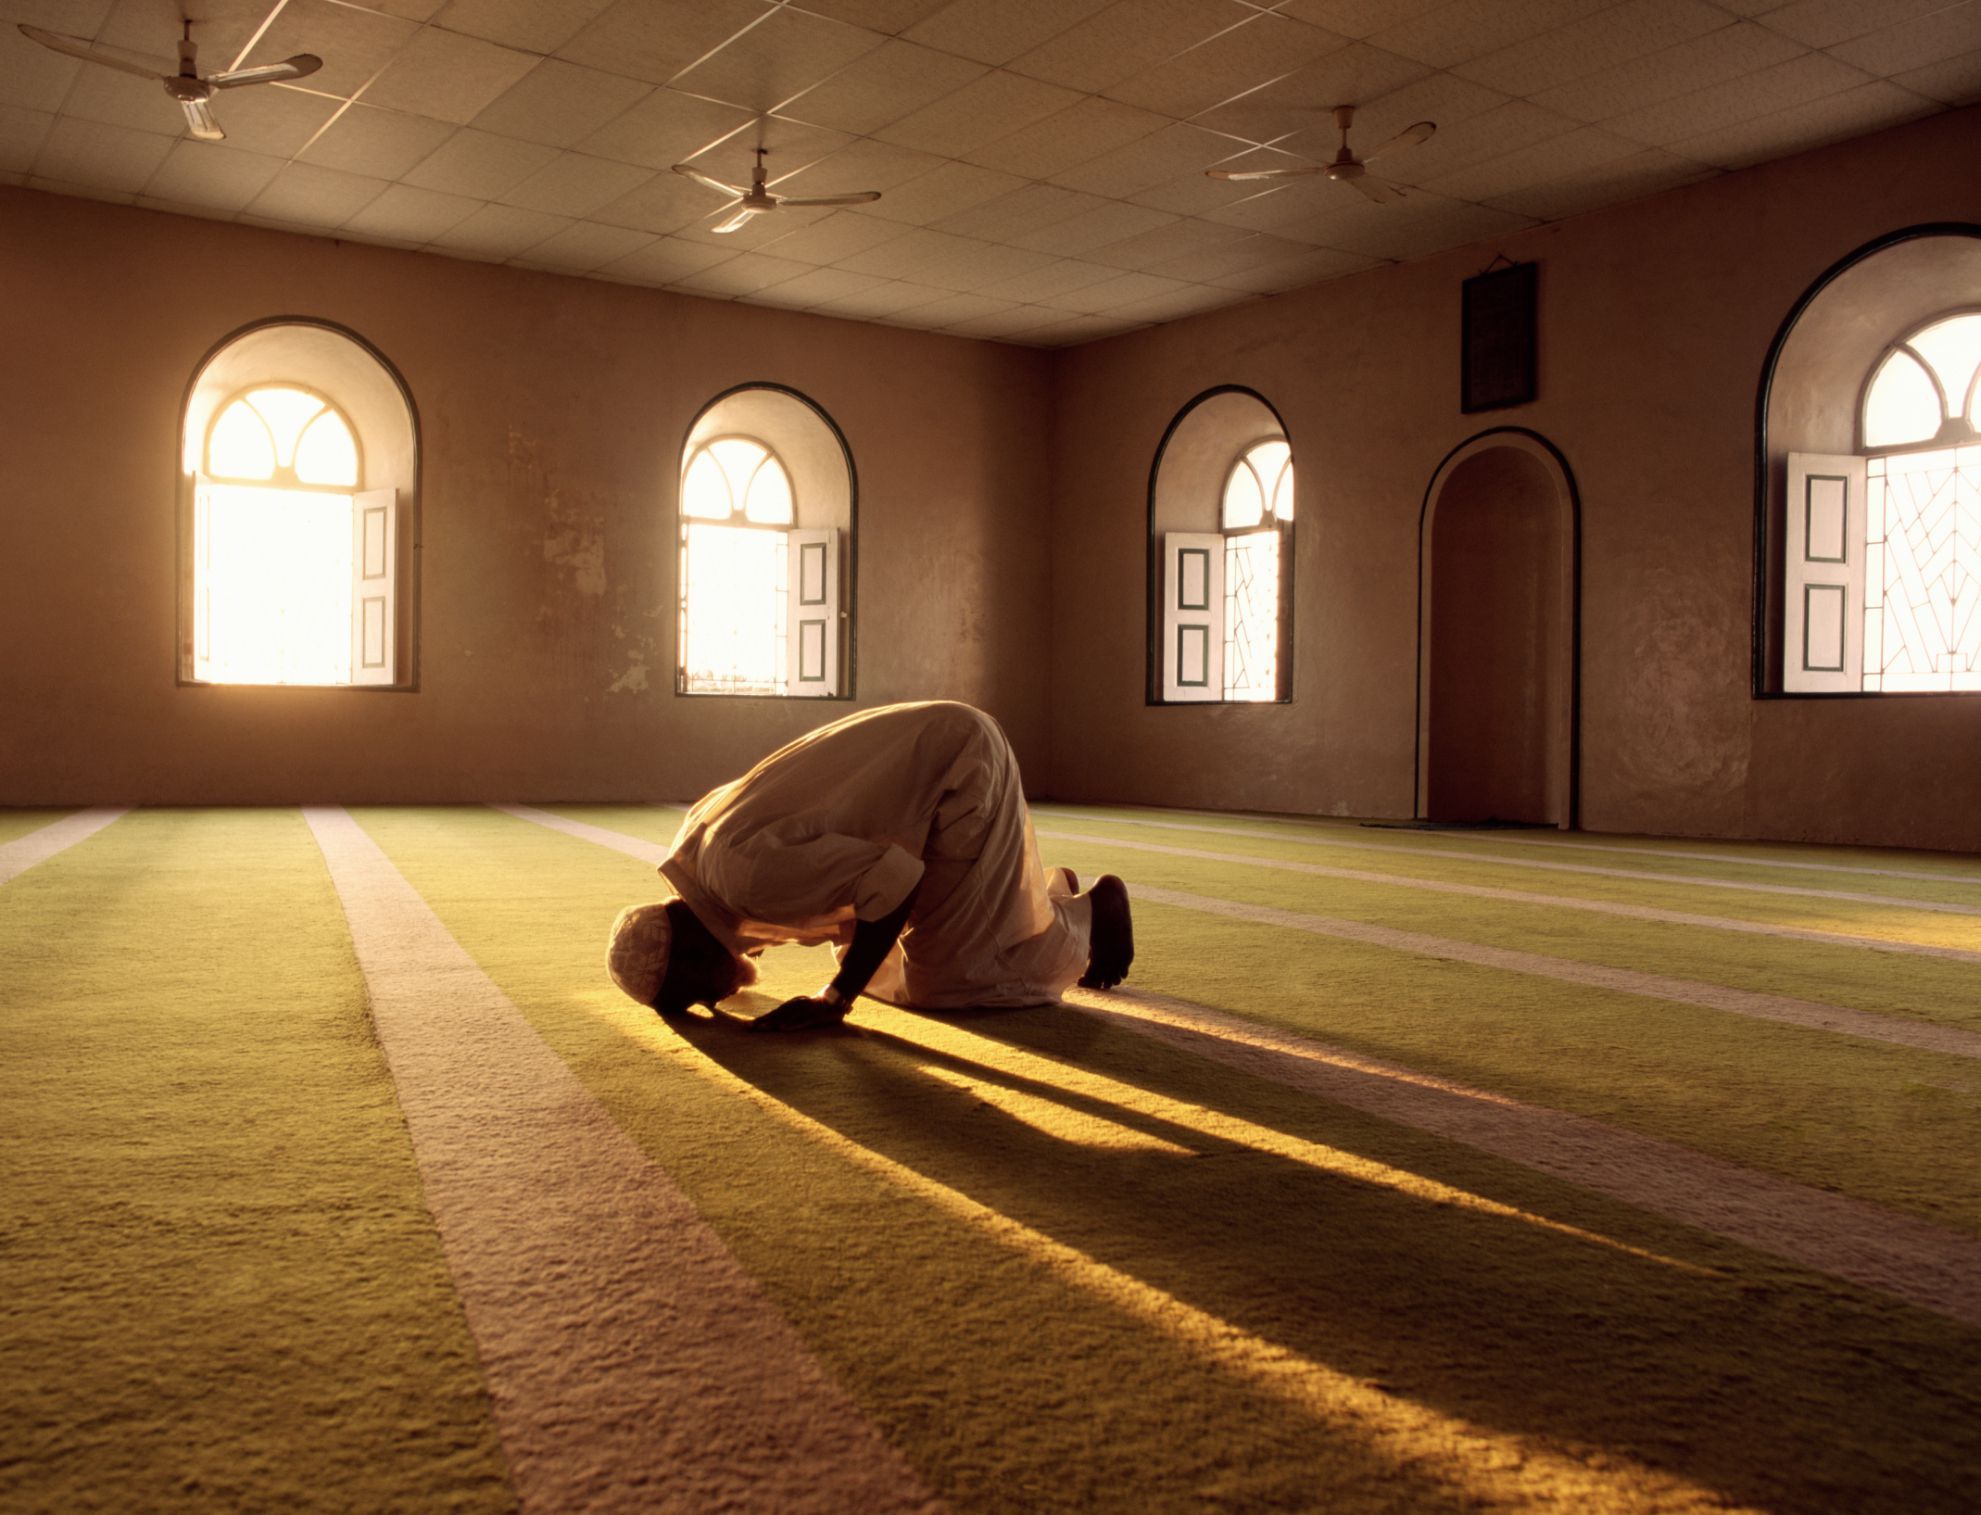 Beginner's Guide and Resources to Islam. Islamic prayer, Muslim pray, Muslim prayer